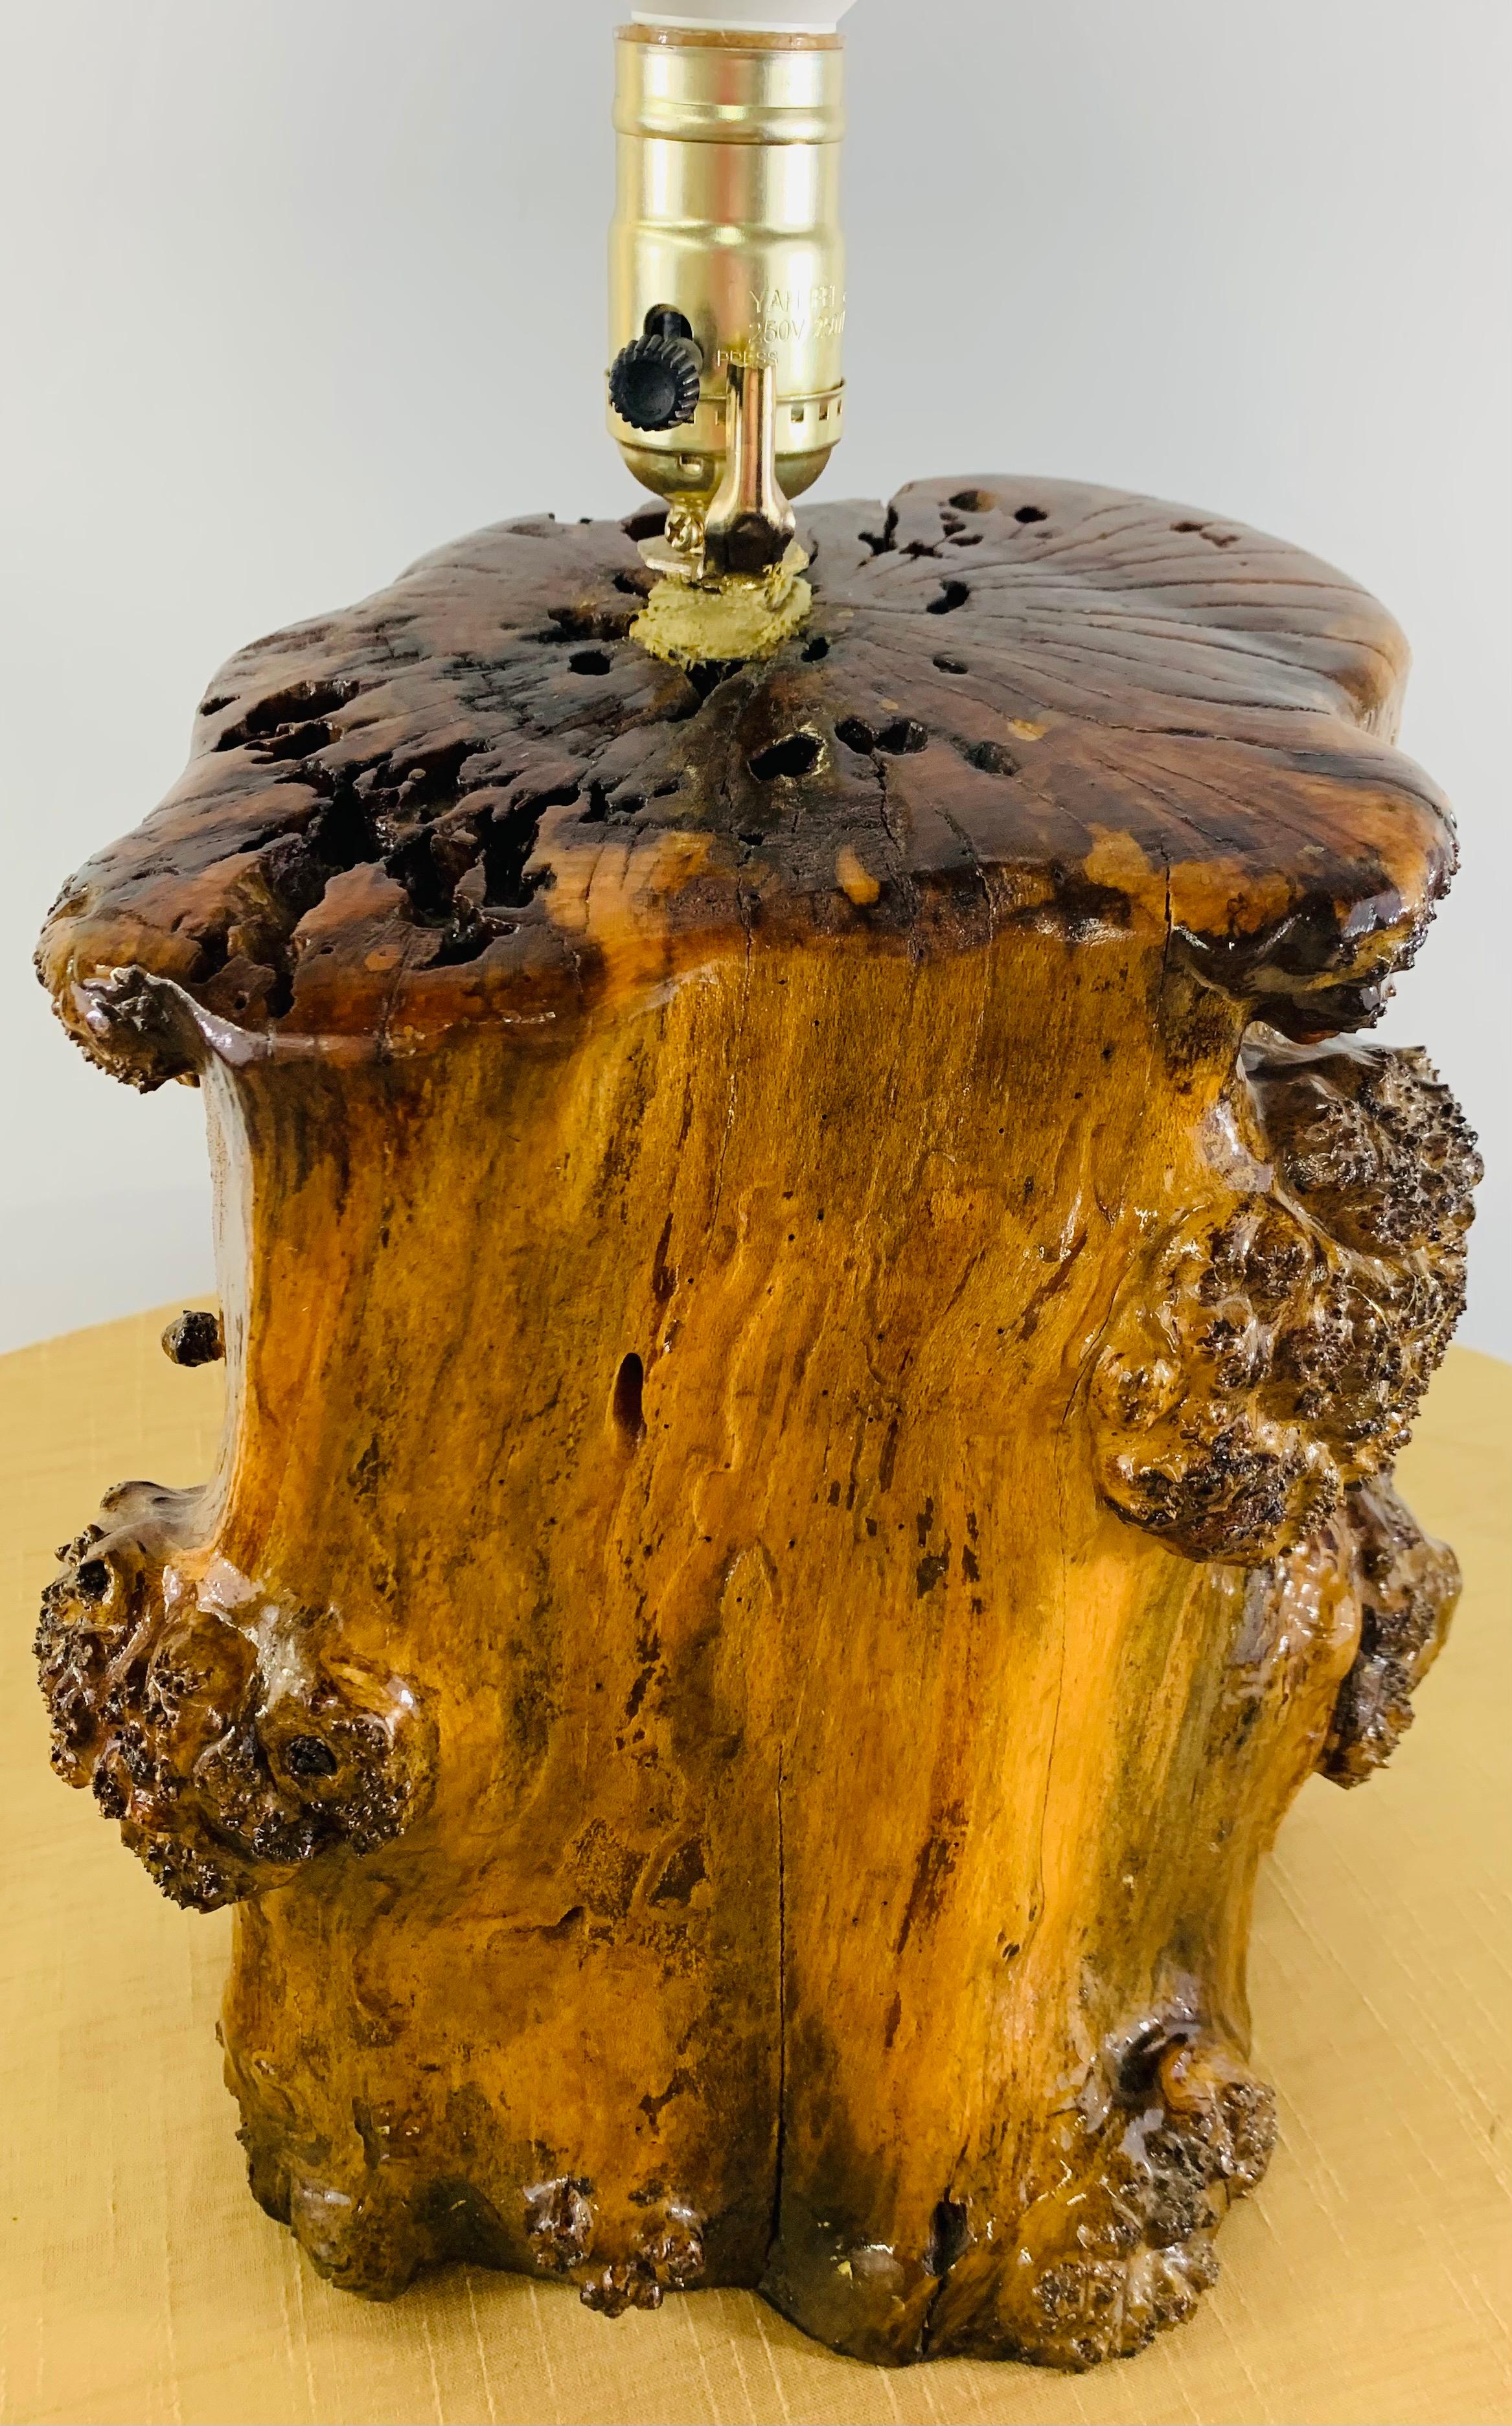 Une lampe de table unique en son genre, de style rustique, en bois d'érable. La base de la lampe présente une texture et des motifs naturels et est laquée pour un aspect brillant. La lampe de table apportera la nature à votre espace de vie tout en